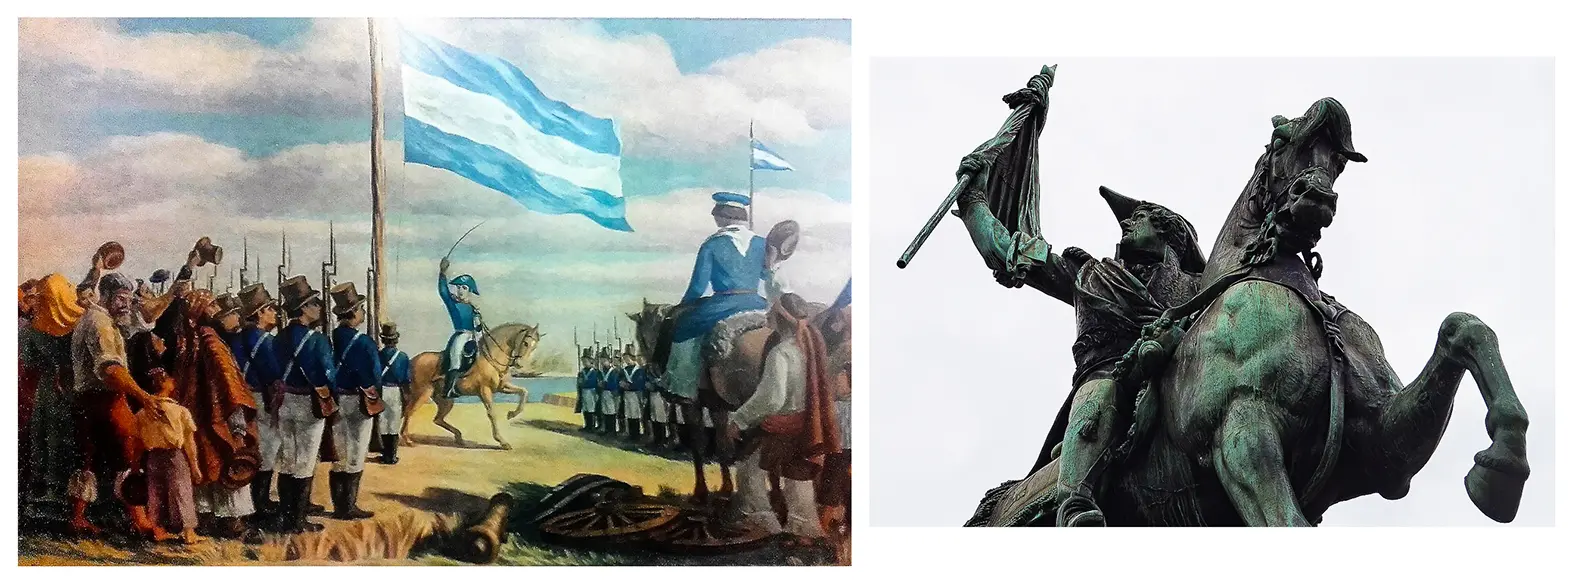 baterias libertad e independencia cuantos cañones tenían - Cuál fue la batalla más importante de la independencia de Argentina